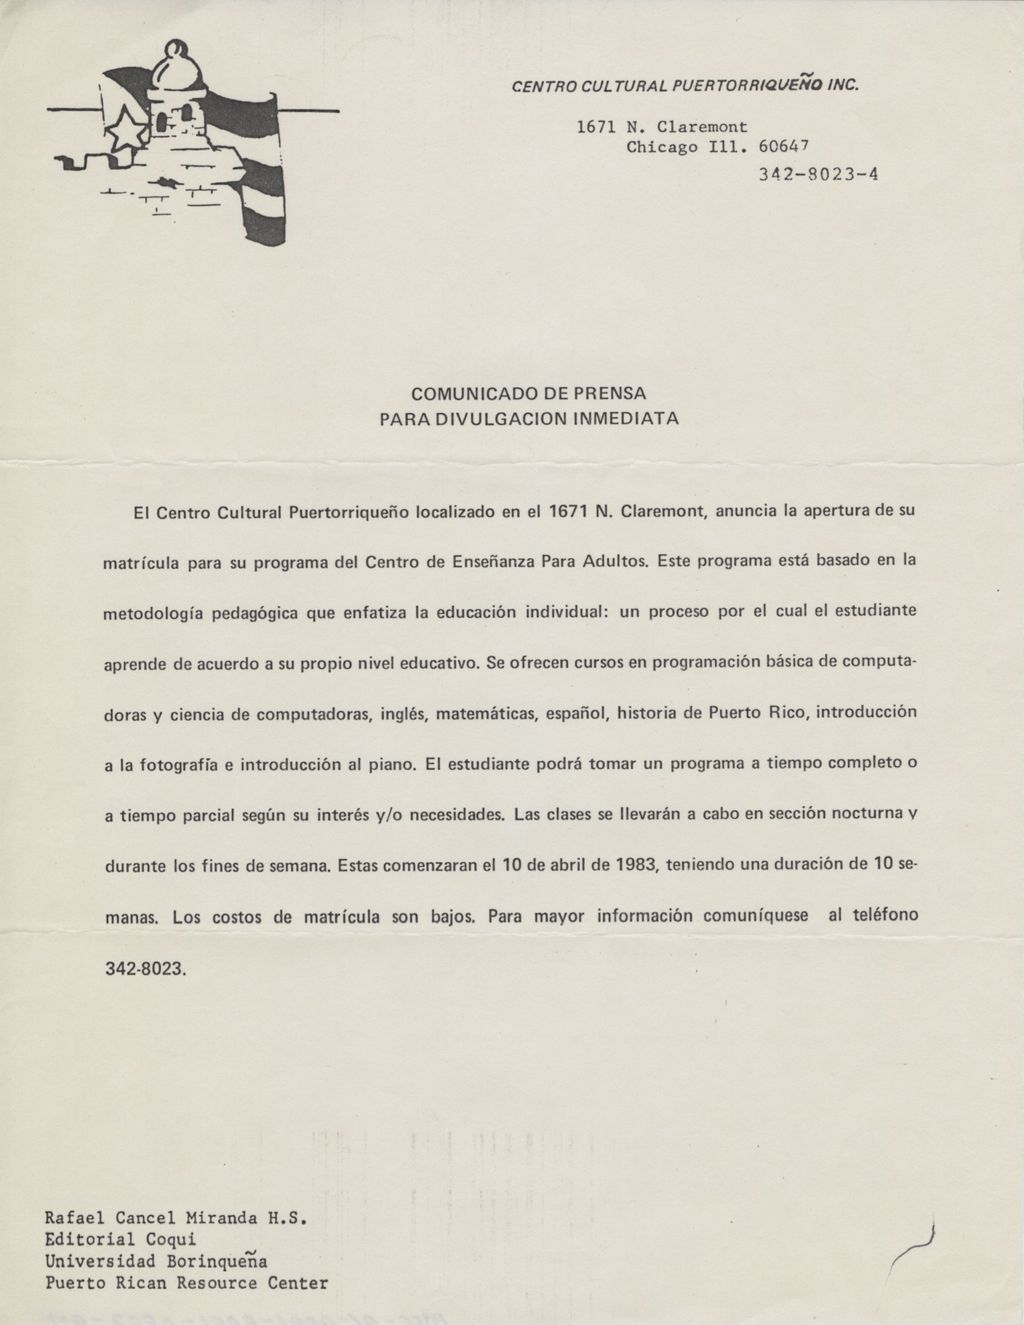 Miniature of Comunicado de Prensa Para Divulgacion Inmediata